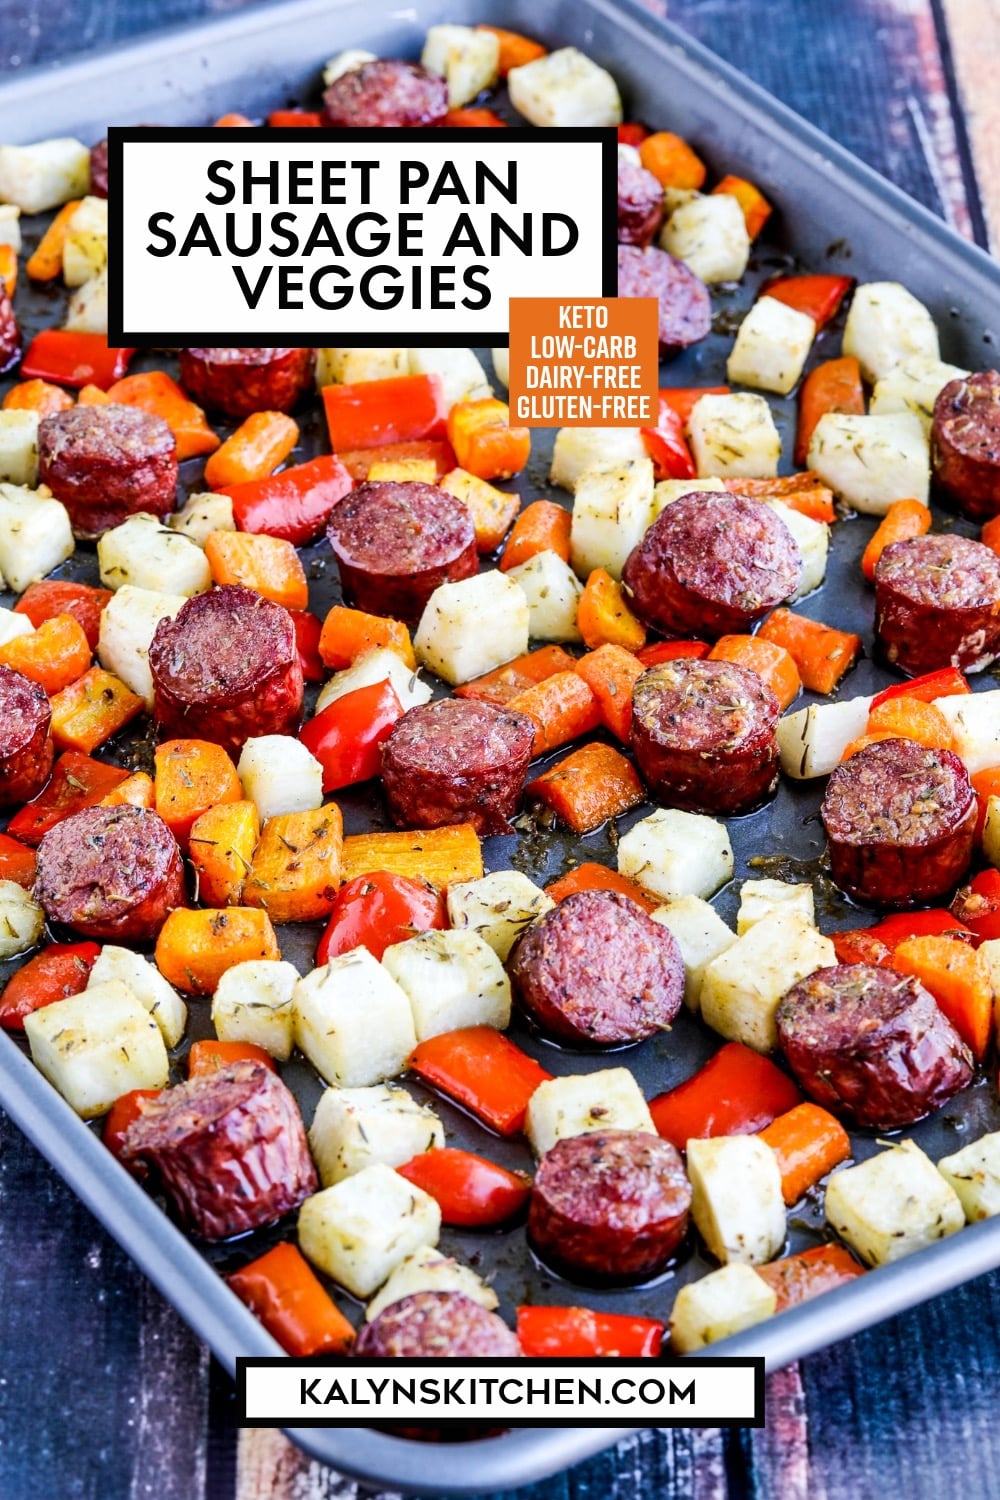 Pinterest image of Sheet Pan Sausage and Veggies